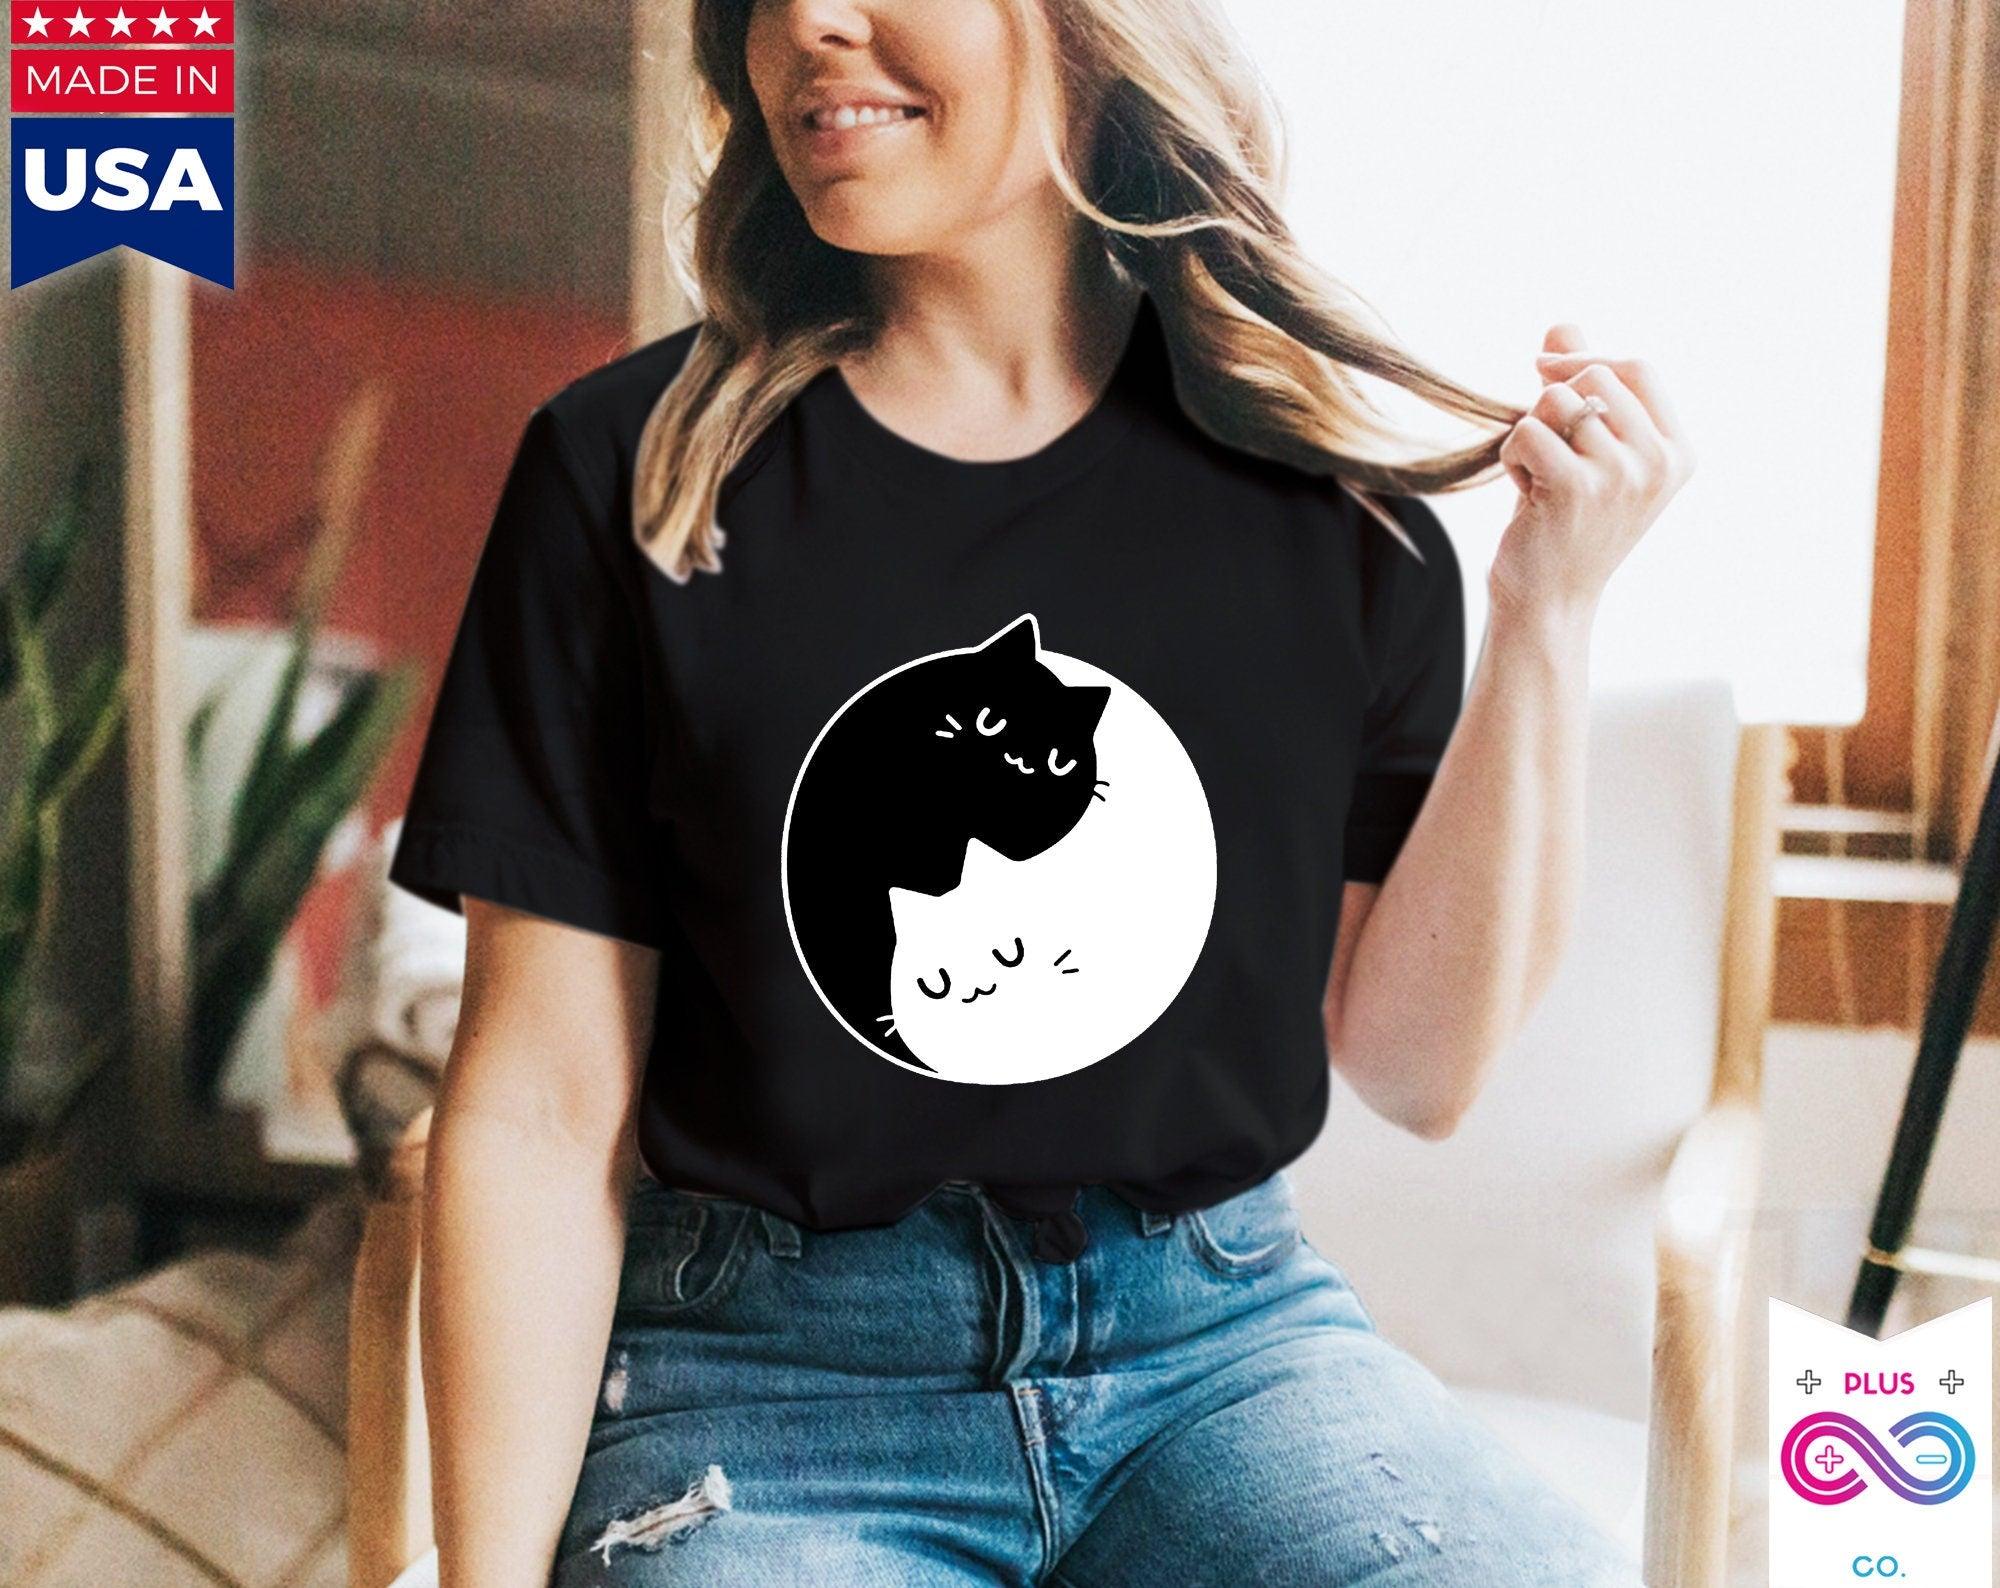 Yin Yang Cats T-Shirts , Yin Yang Duality || Yin Yang Cats || Perfect Gift - S M L Xl - Ladies, Men Unisex || Bff Couple Gift Ideas,Cat Mom Tee, tees - plusminusco.com